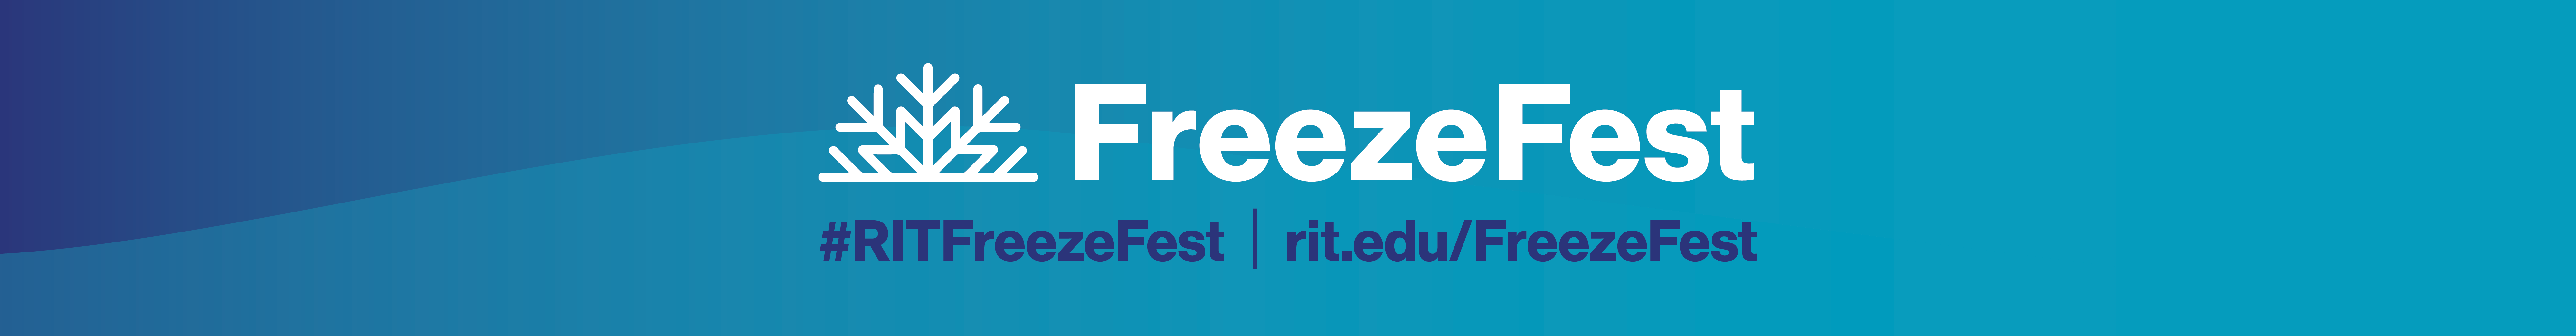 FreezeFest #RITFreezeFest rit.edu/FreezeFest